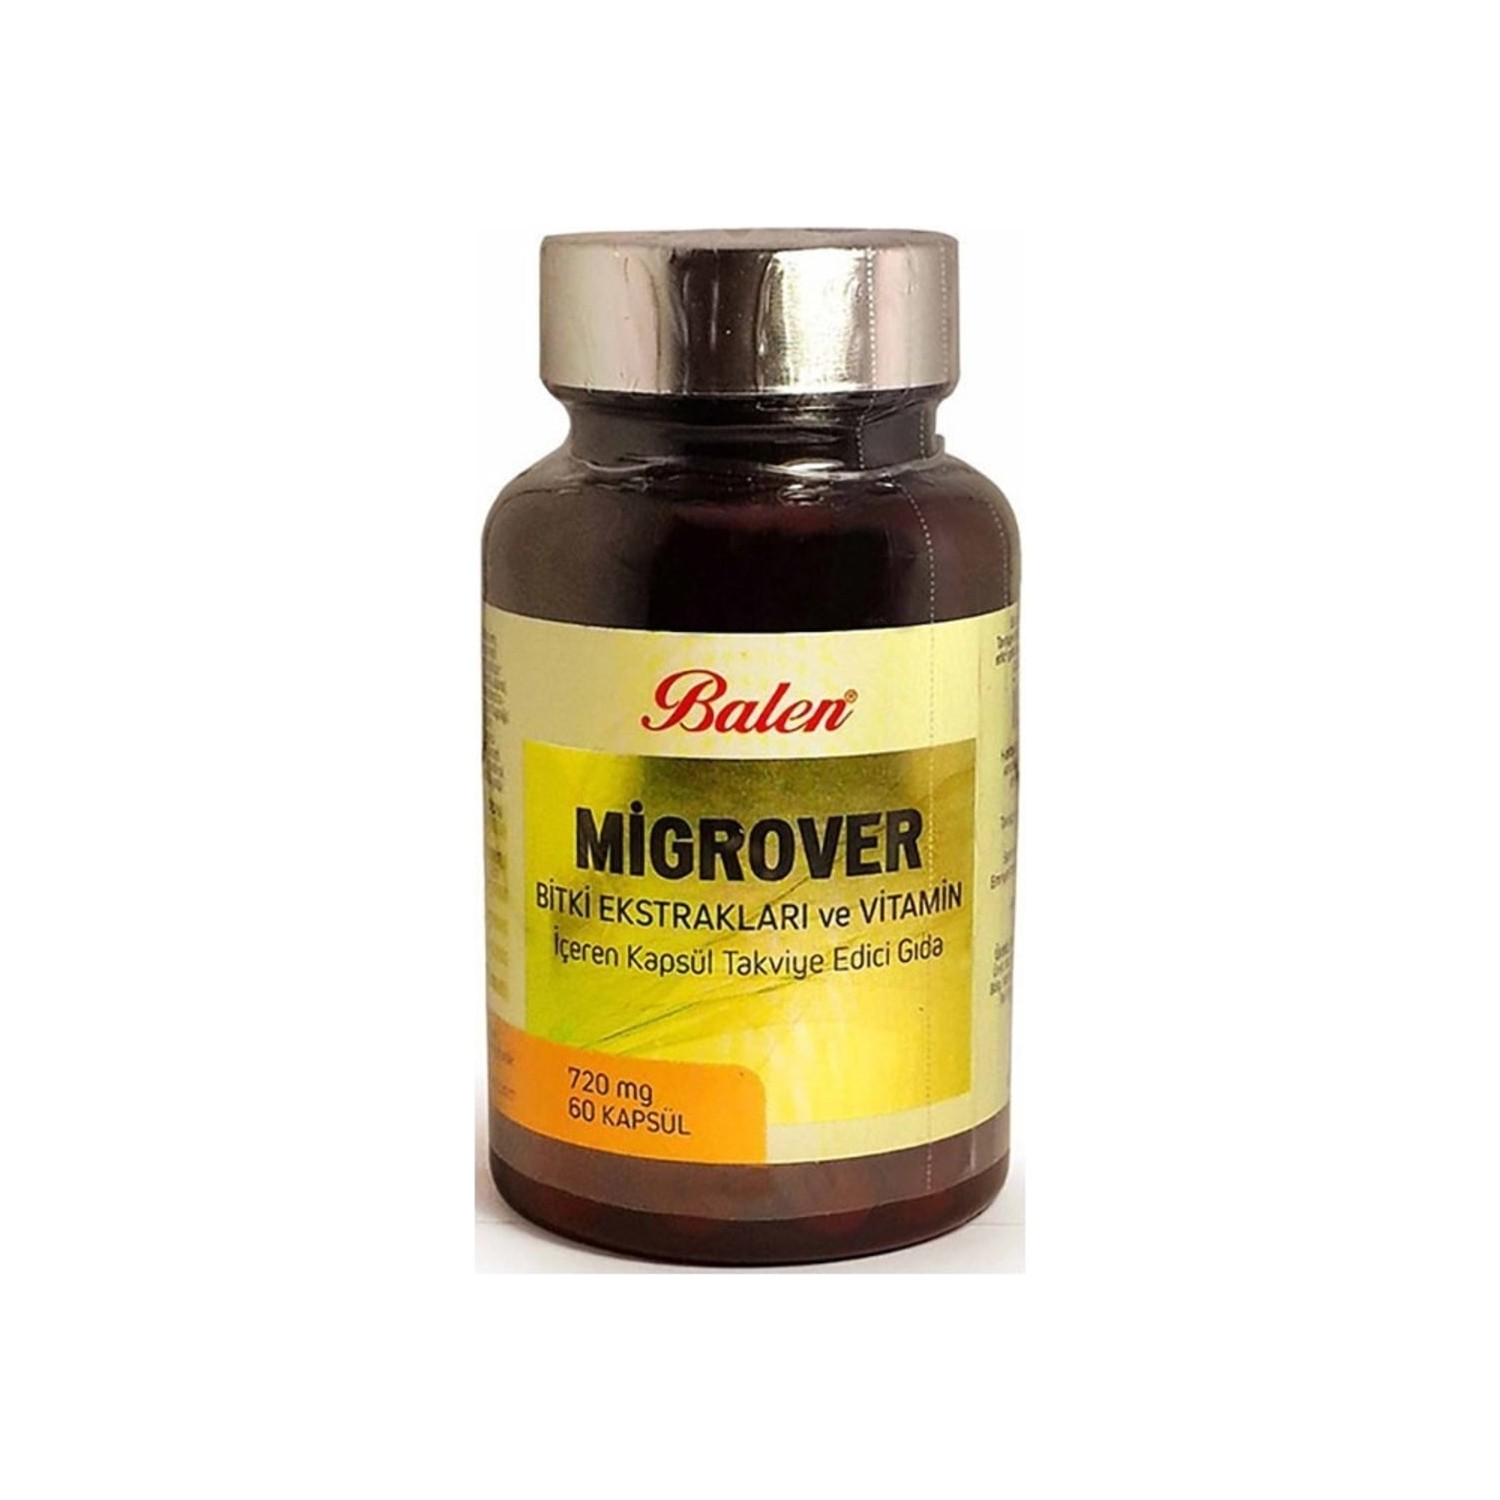 mrm moringa 600 mg 60 vegan capsules Капсулы Balen Migrover, содержащие растительные экстракты и витамины, 60 капсул, 720 мг